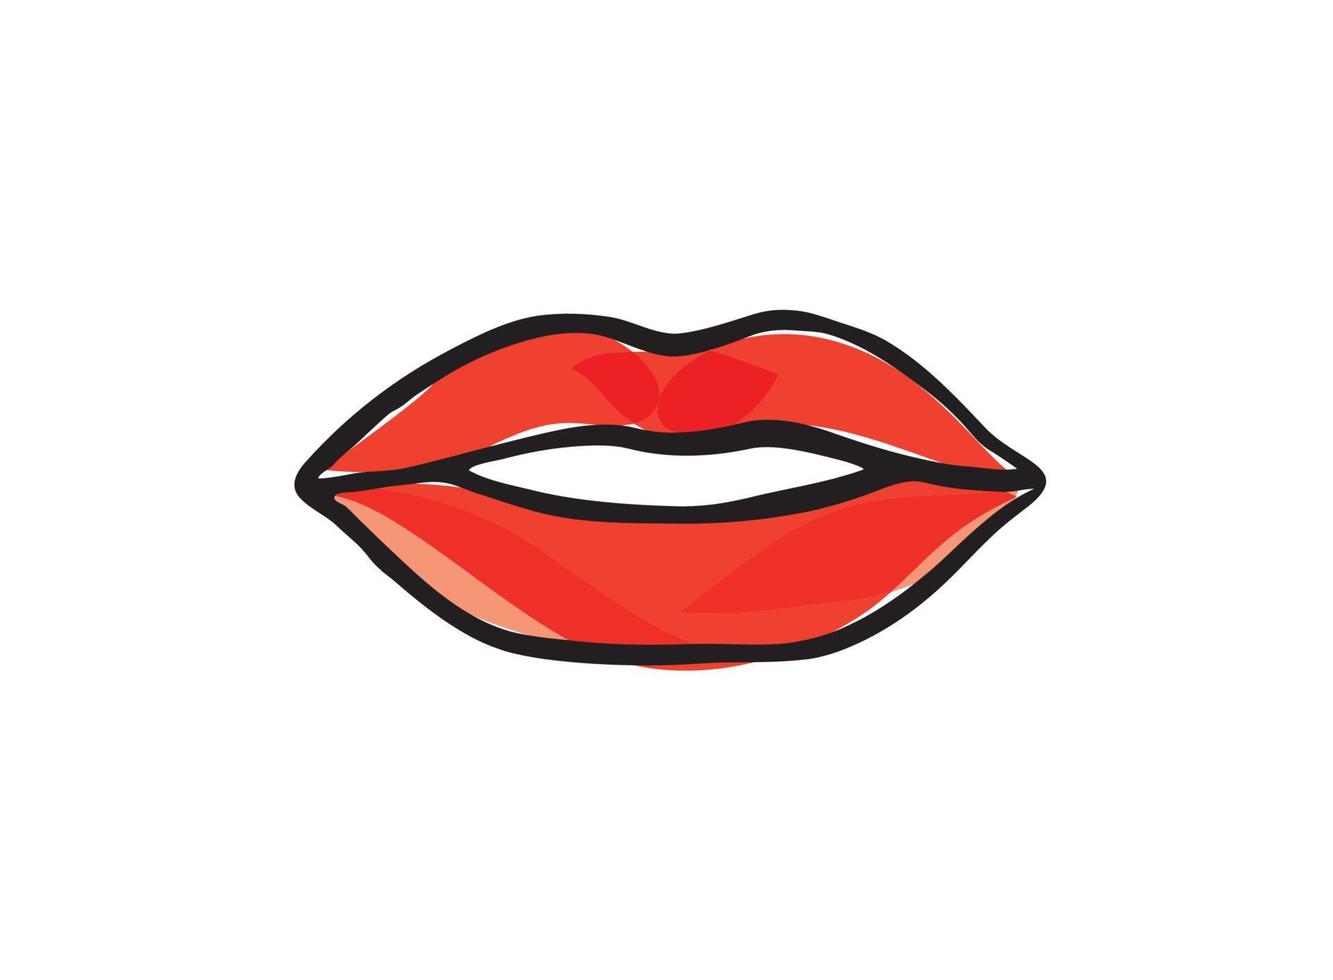 lippen vrouwelijk. sexy rode lippen lijn getekende illustratie. mooie vrouw lippen logo in pastel kleur. ontwerpconcept goed voor logo, kaart, spandoek, poster, flyer vector